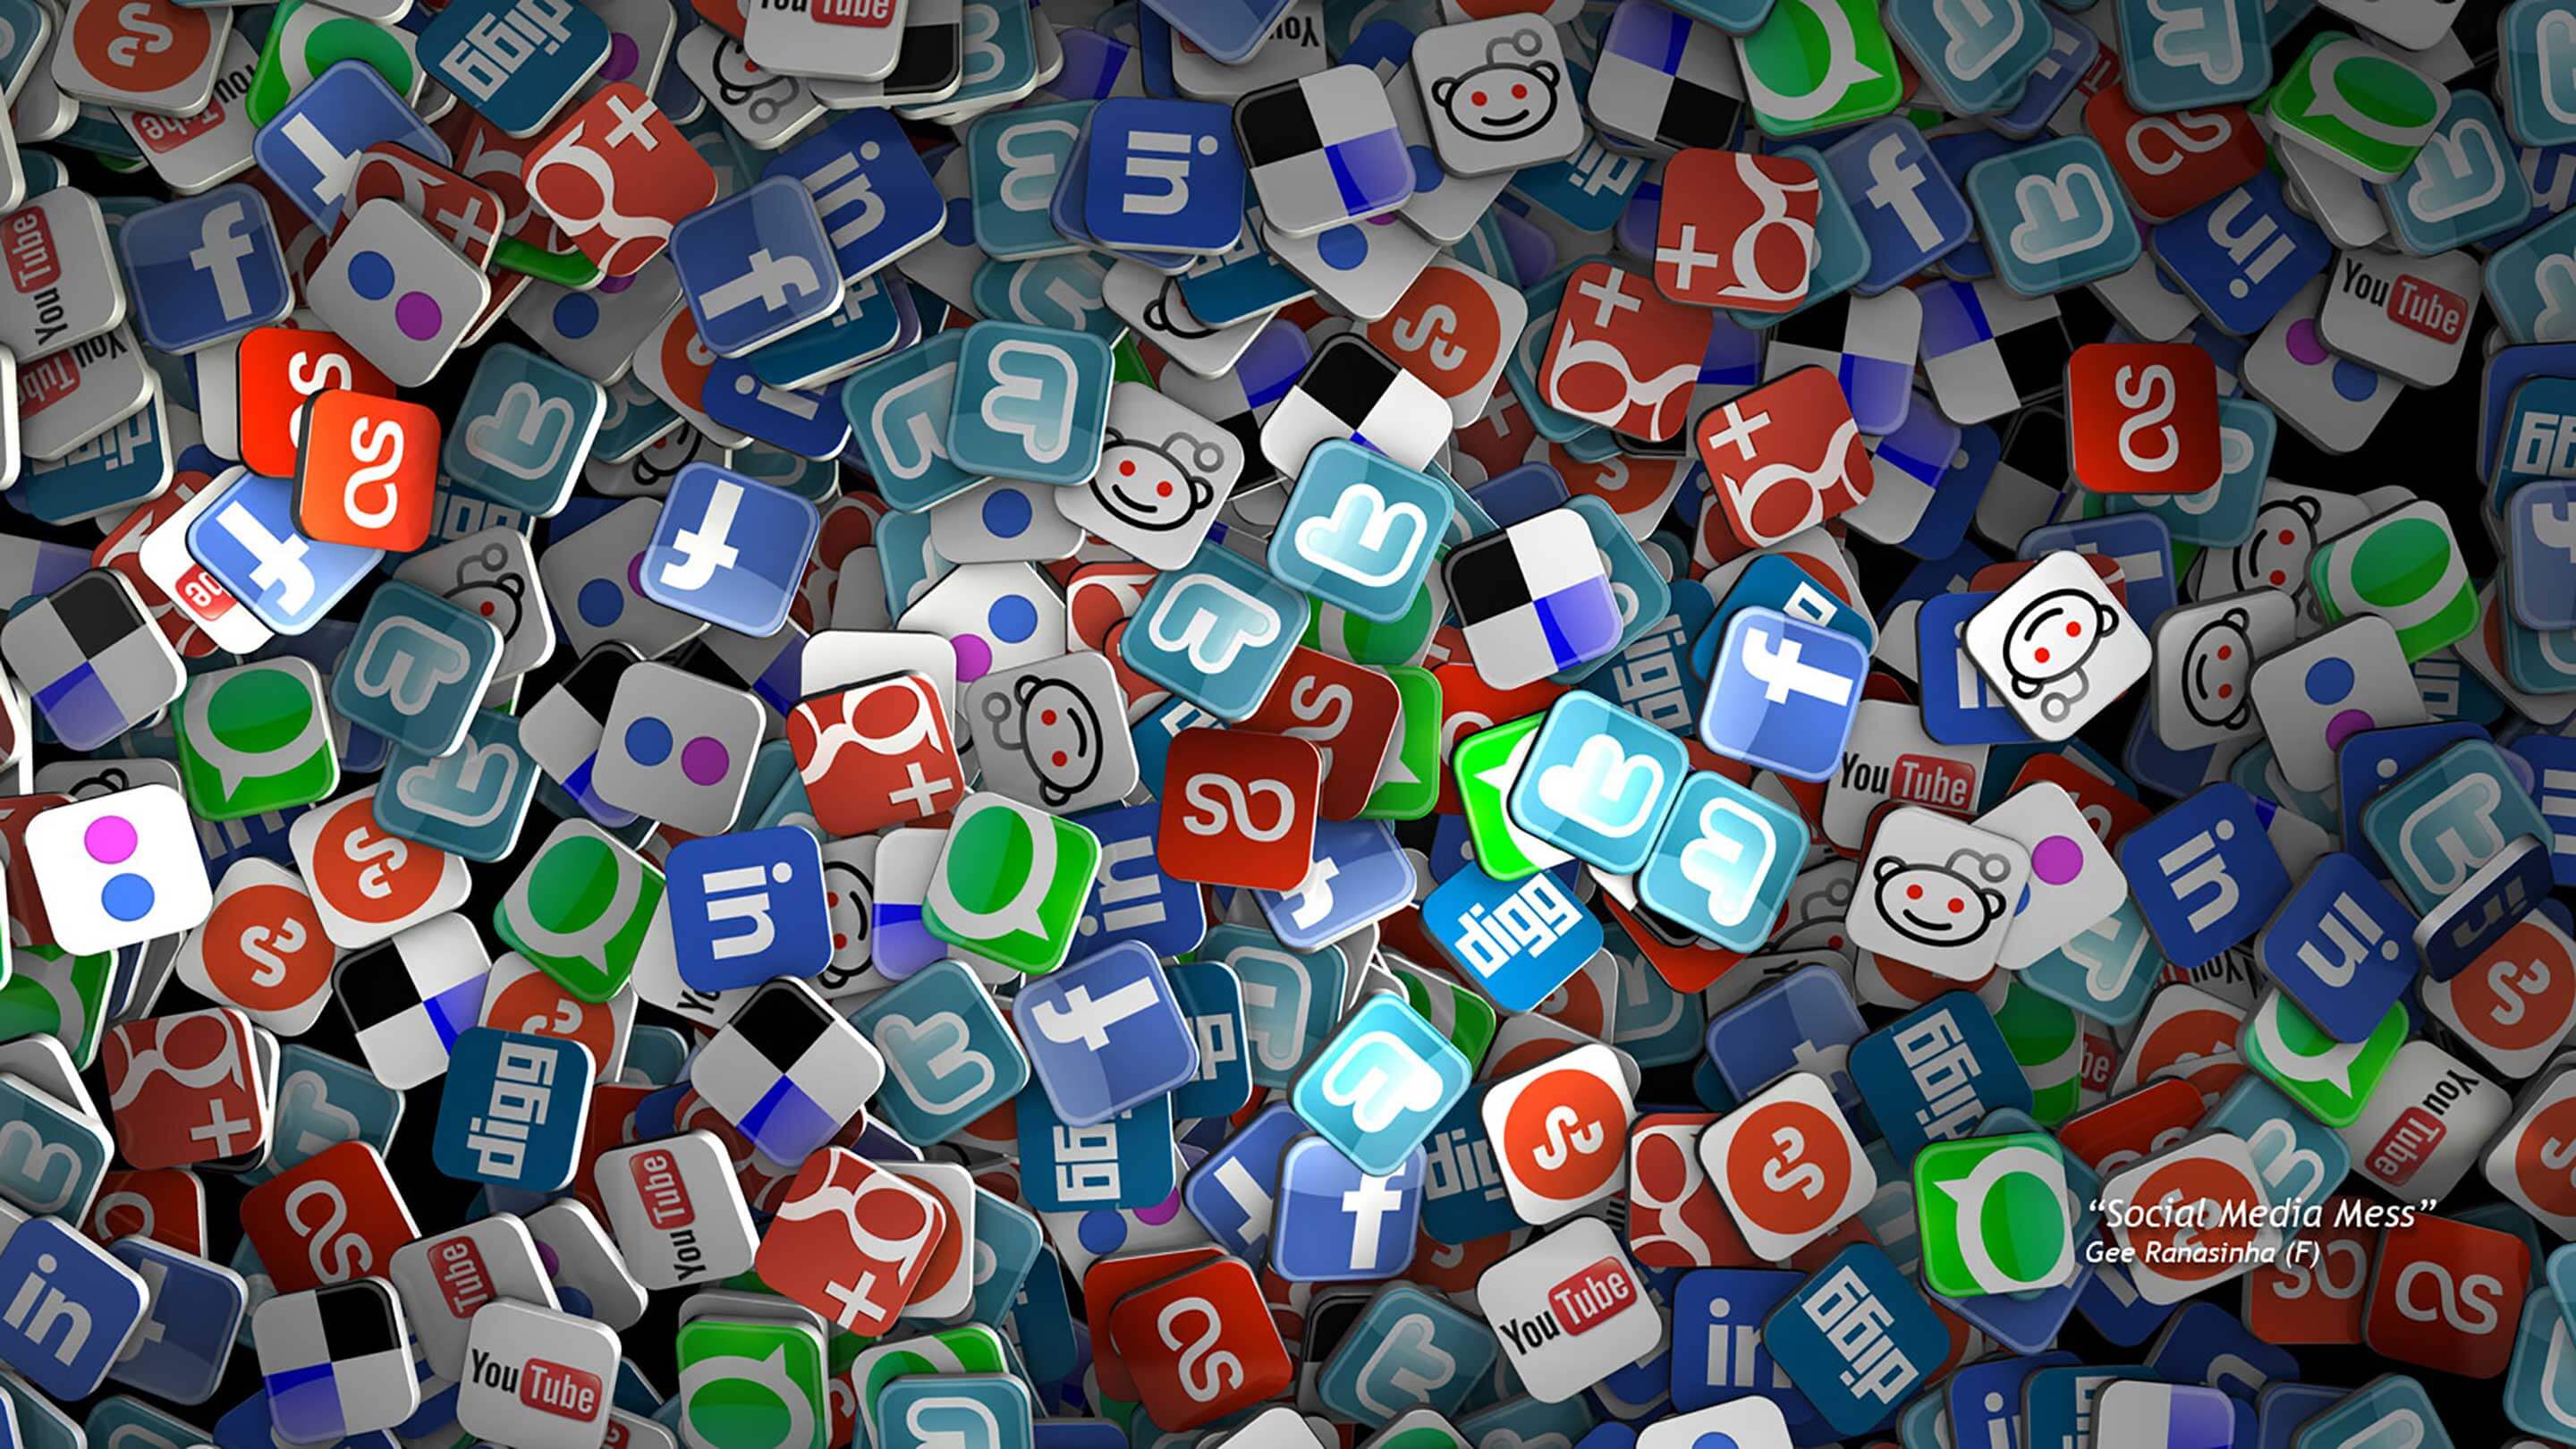 32 Best Social Media Marketing Tips for Online Business